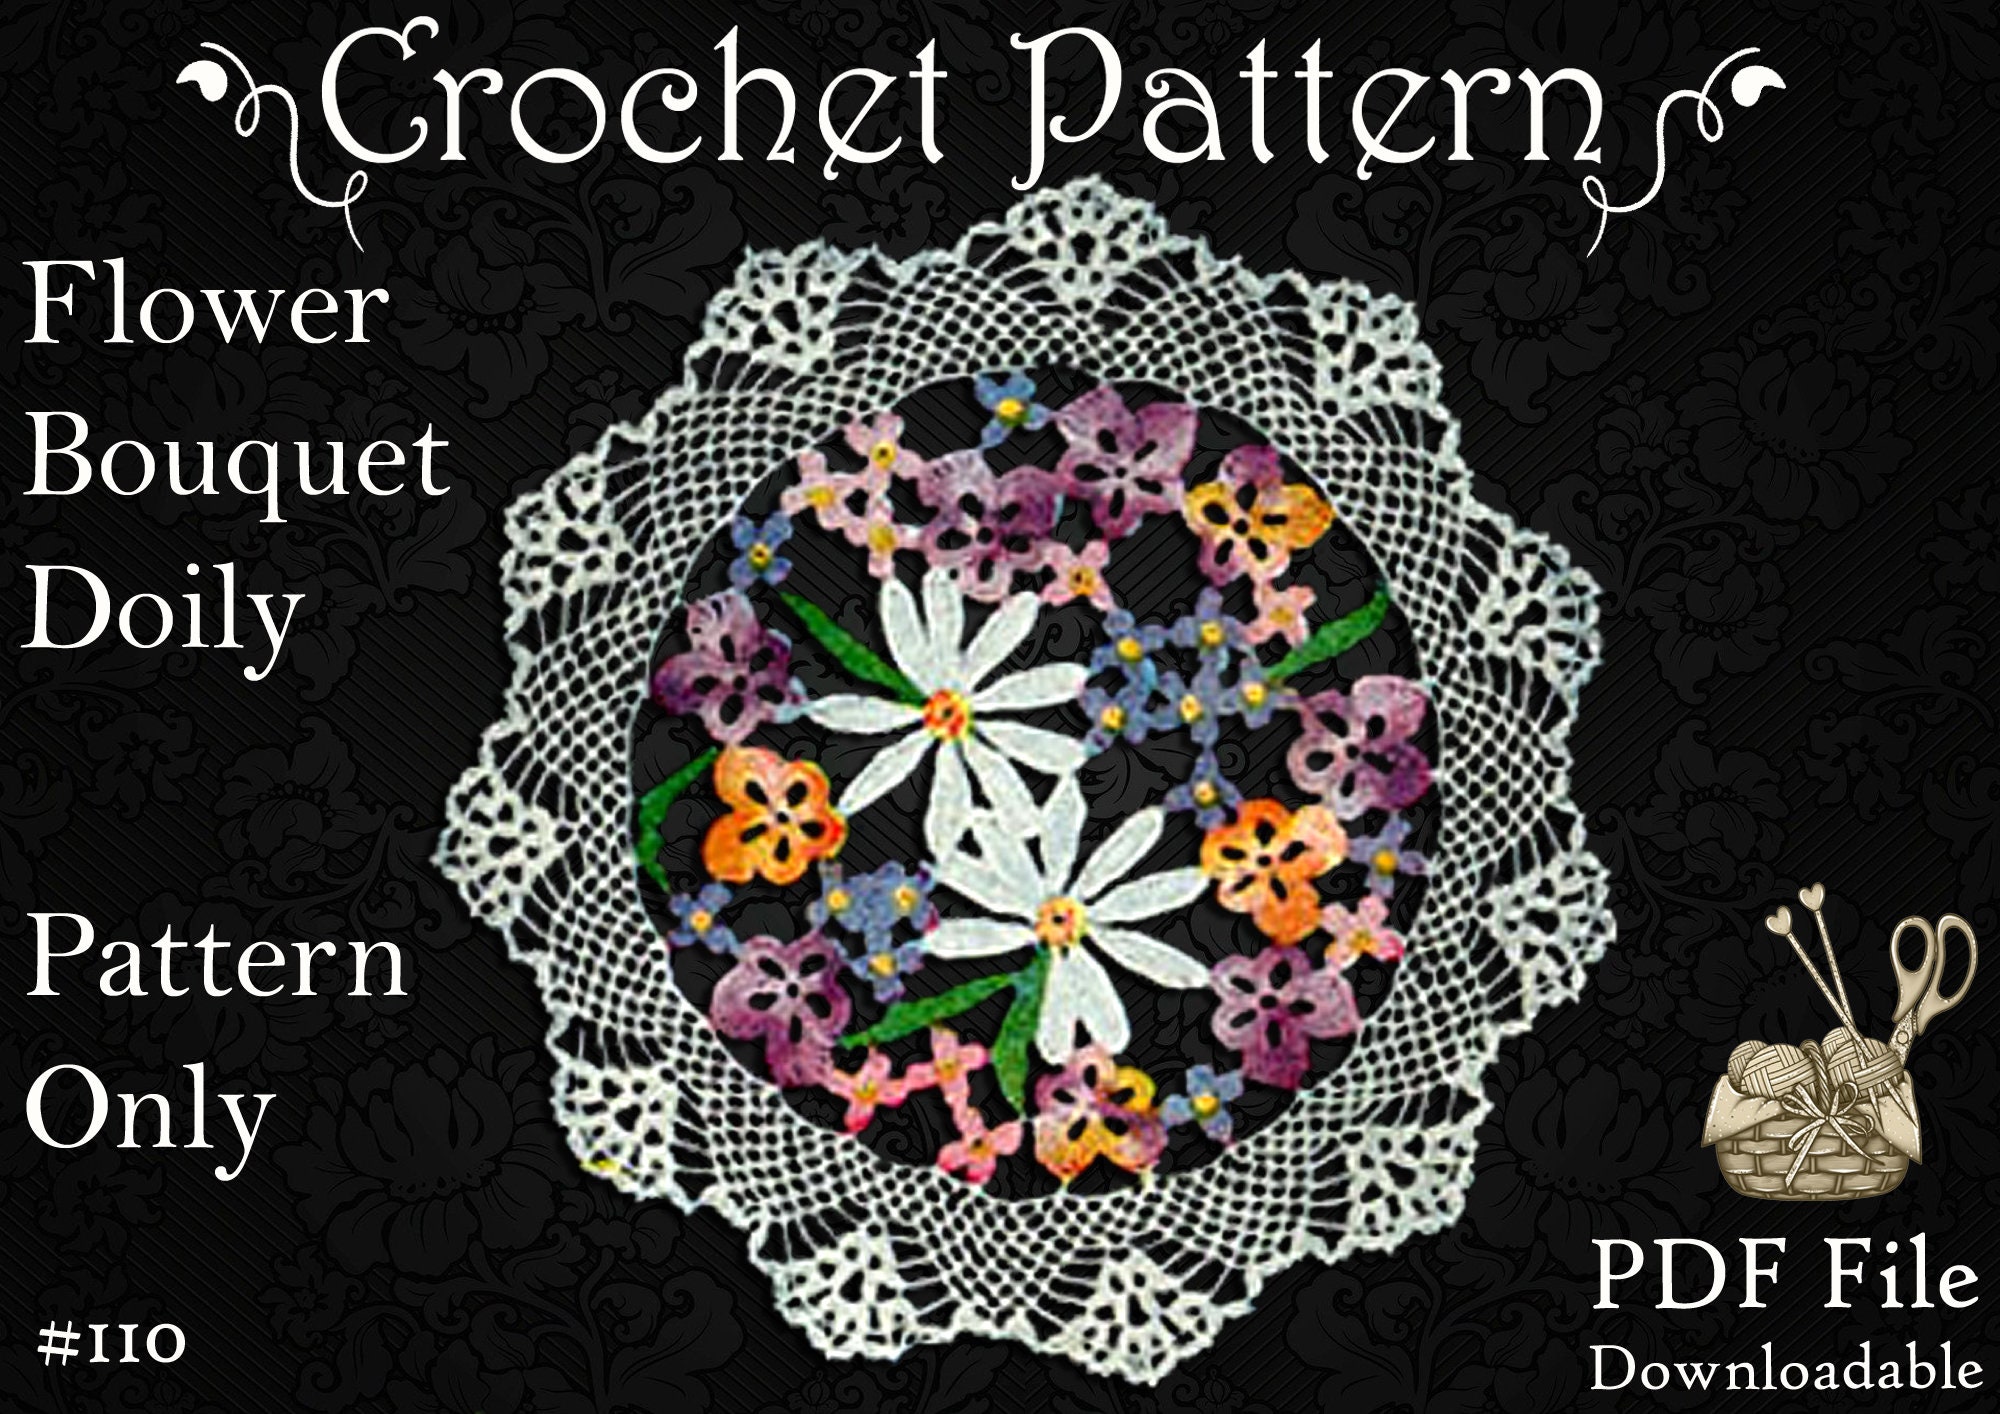 Lake Life - Hand Stitch Embroidery Transfer Pattern